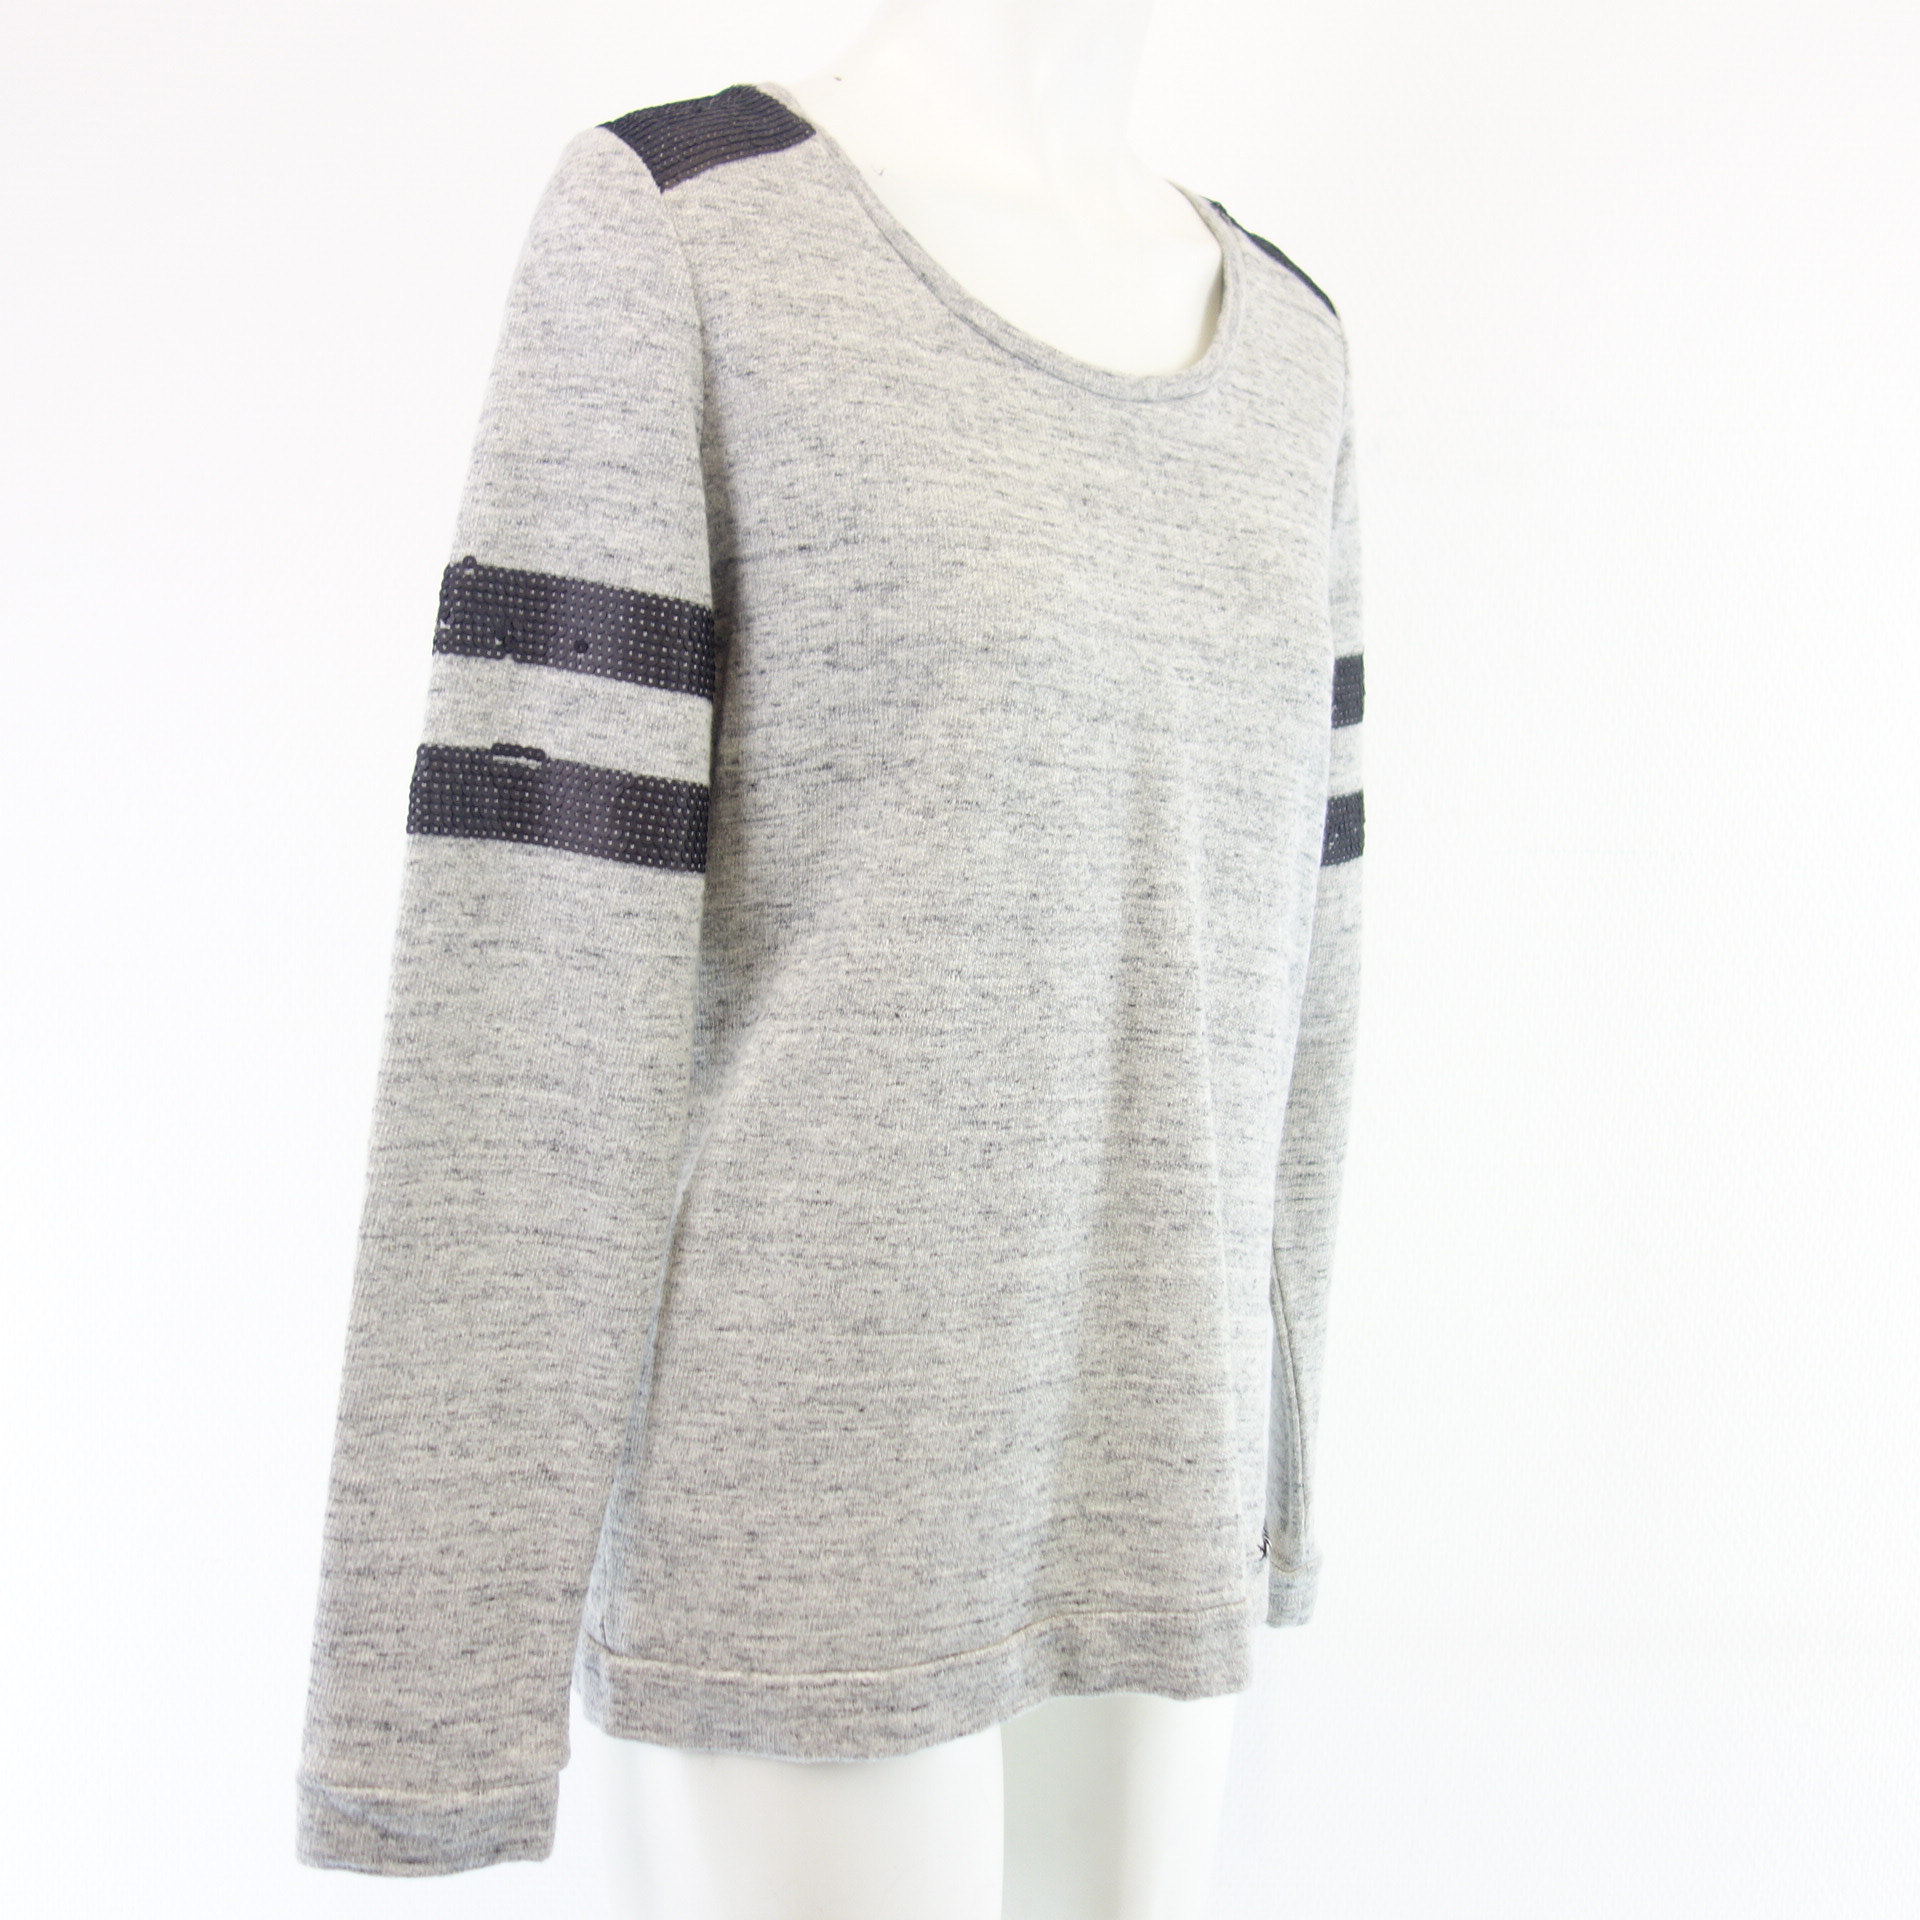 FROGBOX by Princess Damen Sweater Sweatshirt Pullover Grau Schwarz Pailletten Gr 36